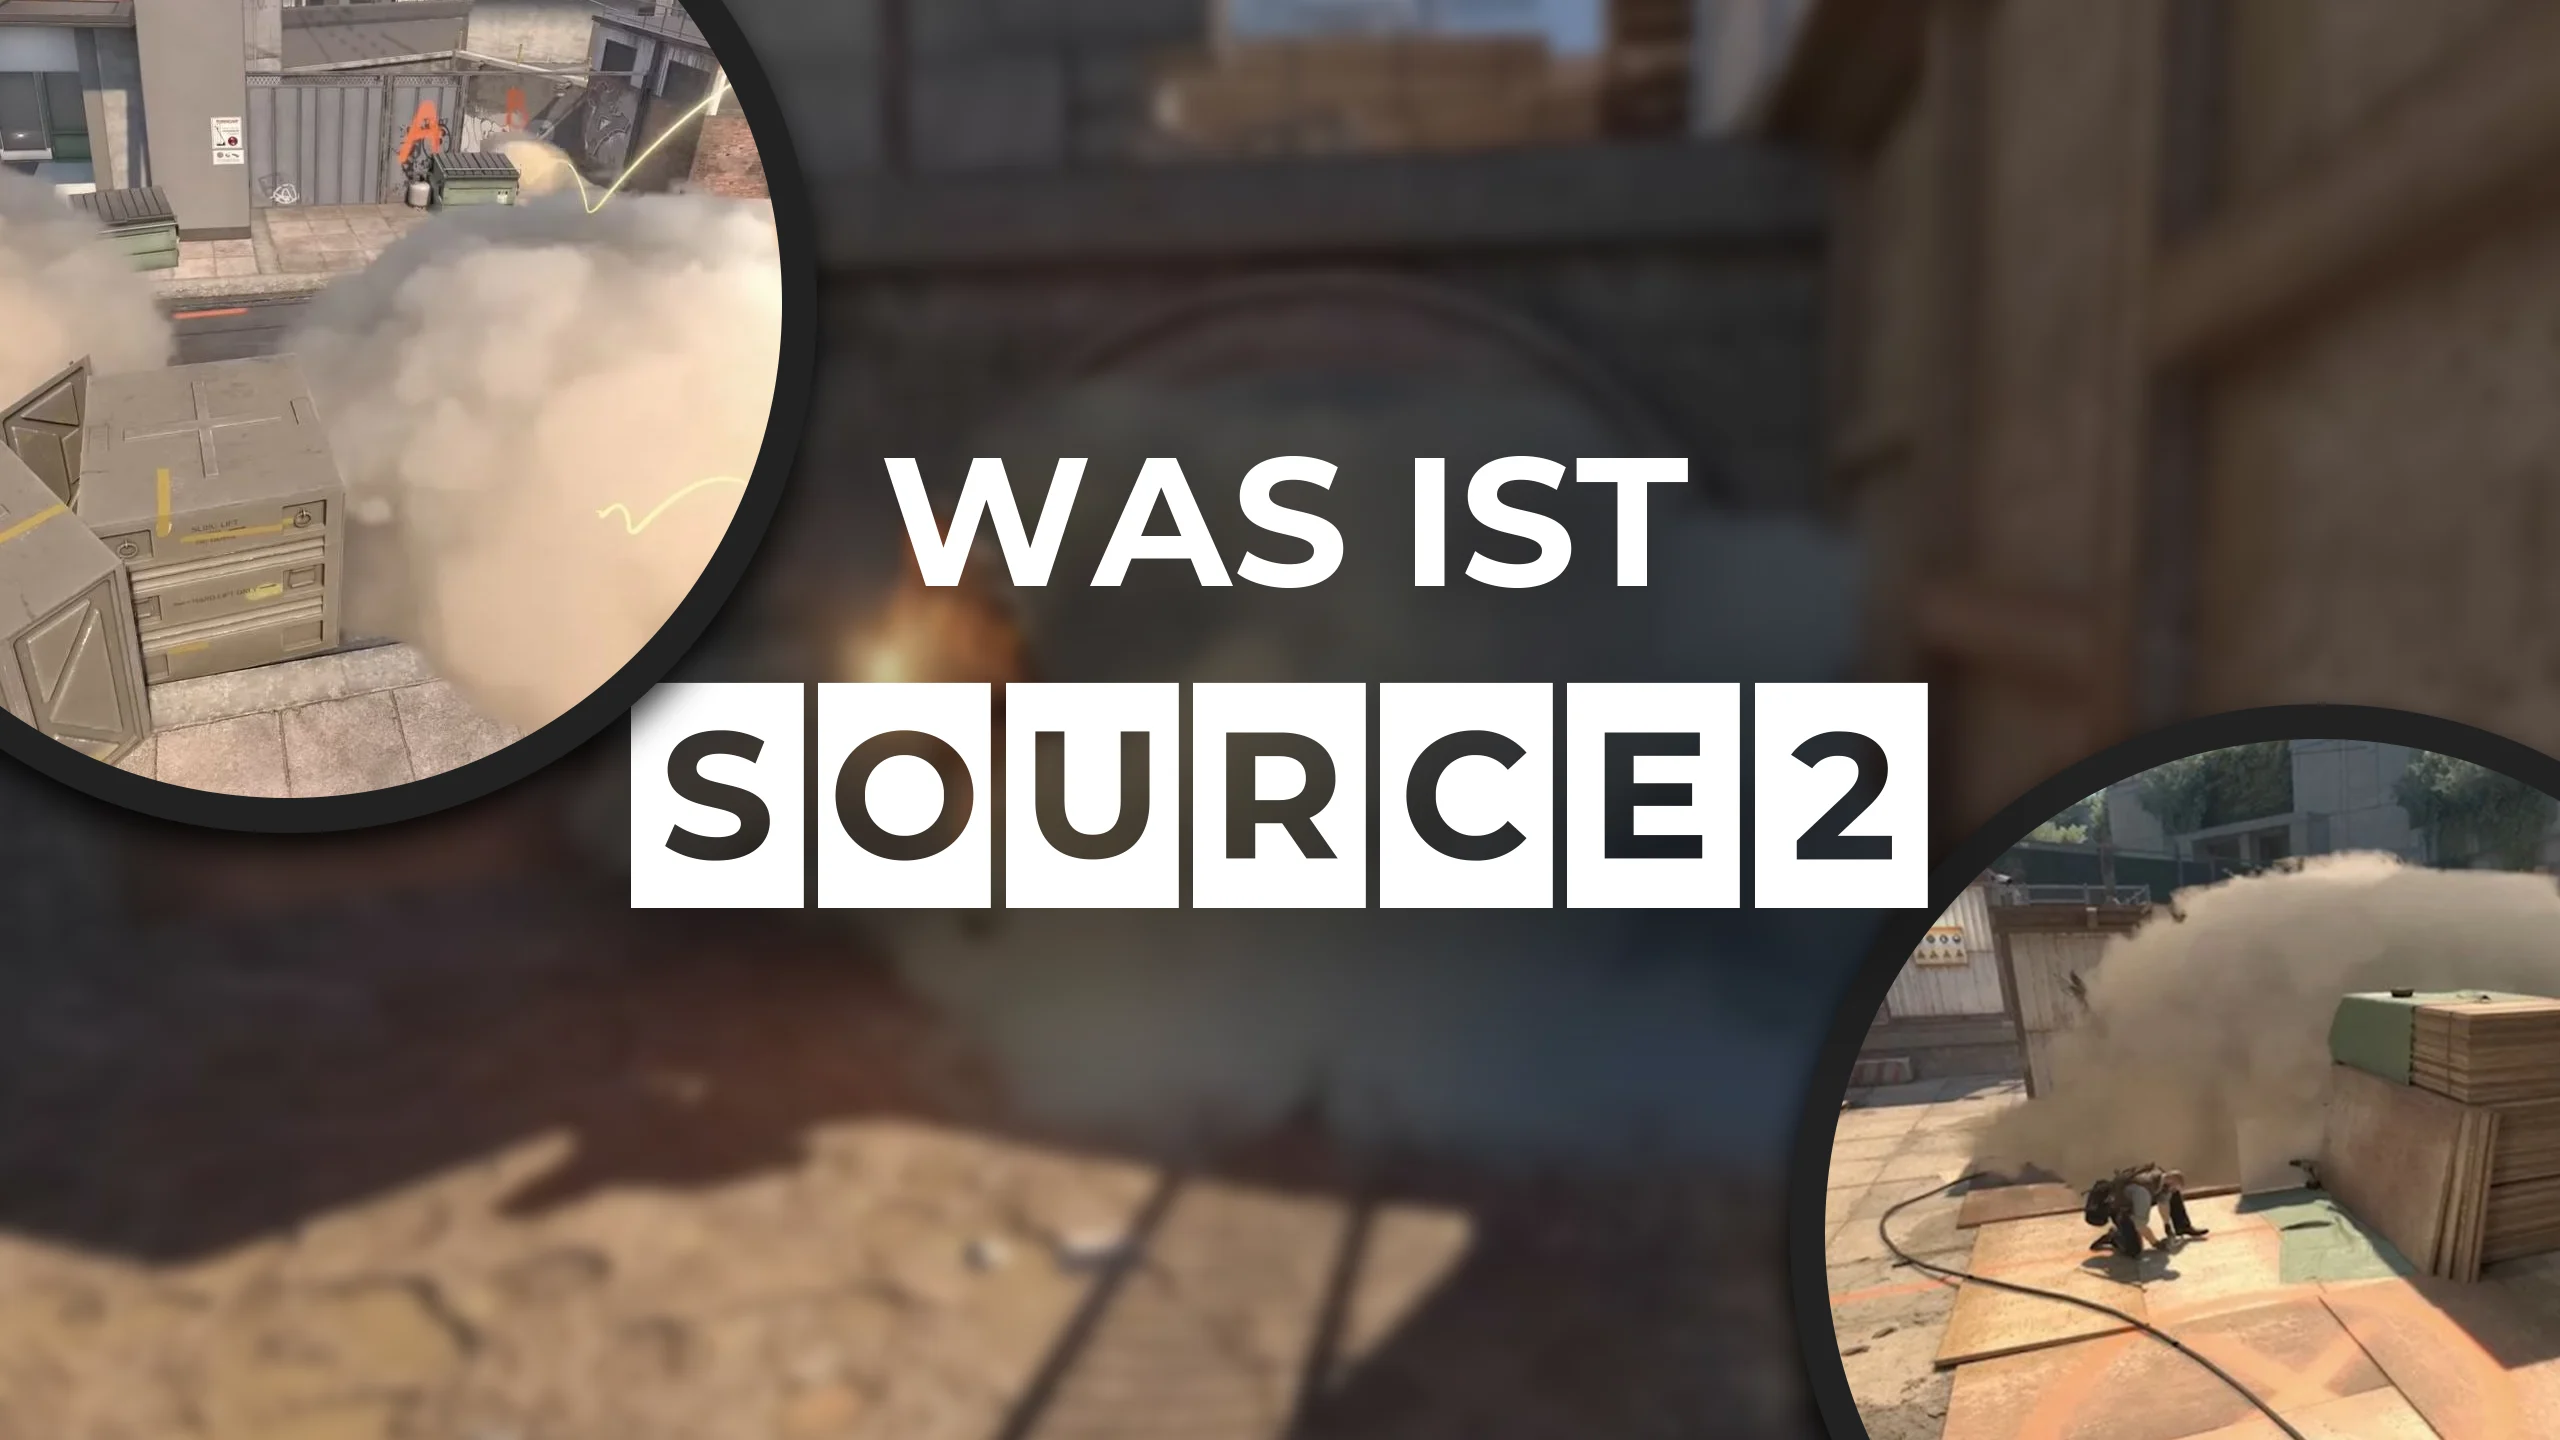 Was ist Source 2?